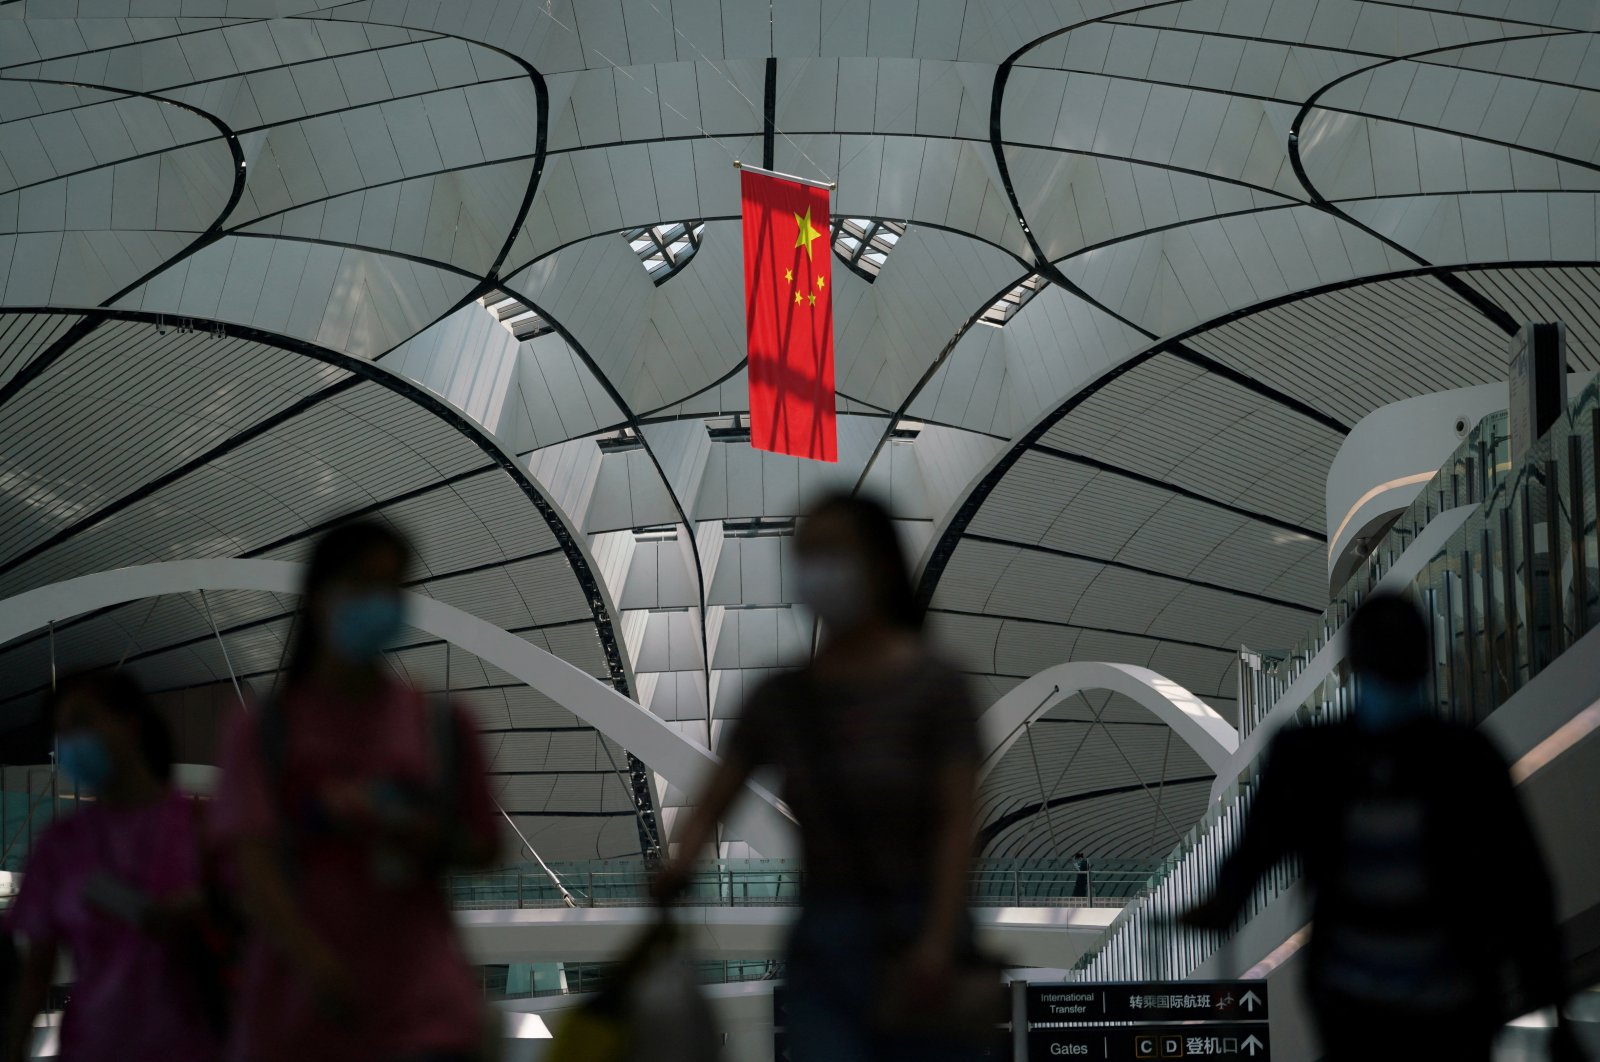 Pejabat China melakukan ratusan perjalanan ke Asia, Eropa untuk mencari investor